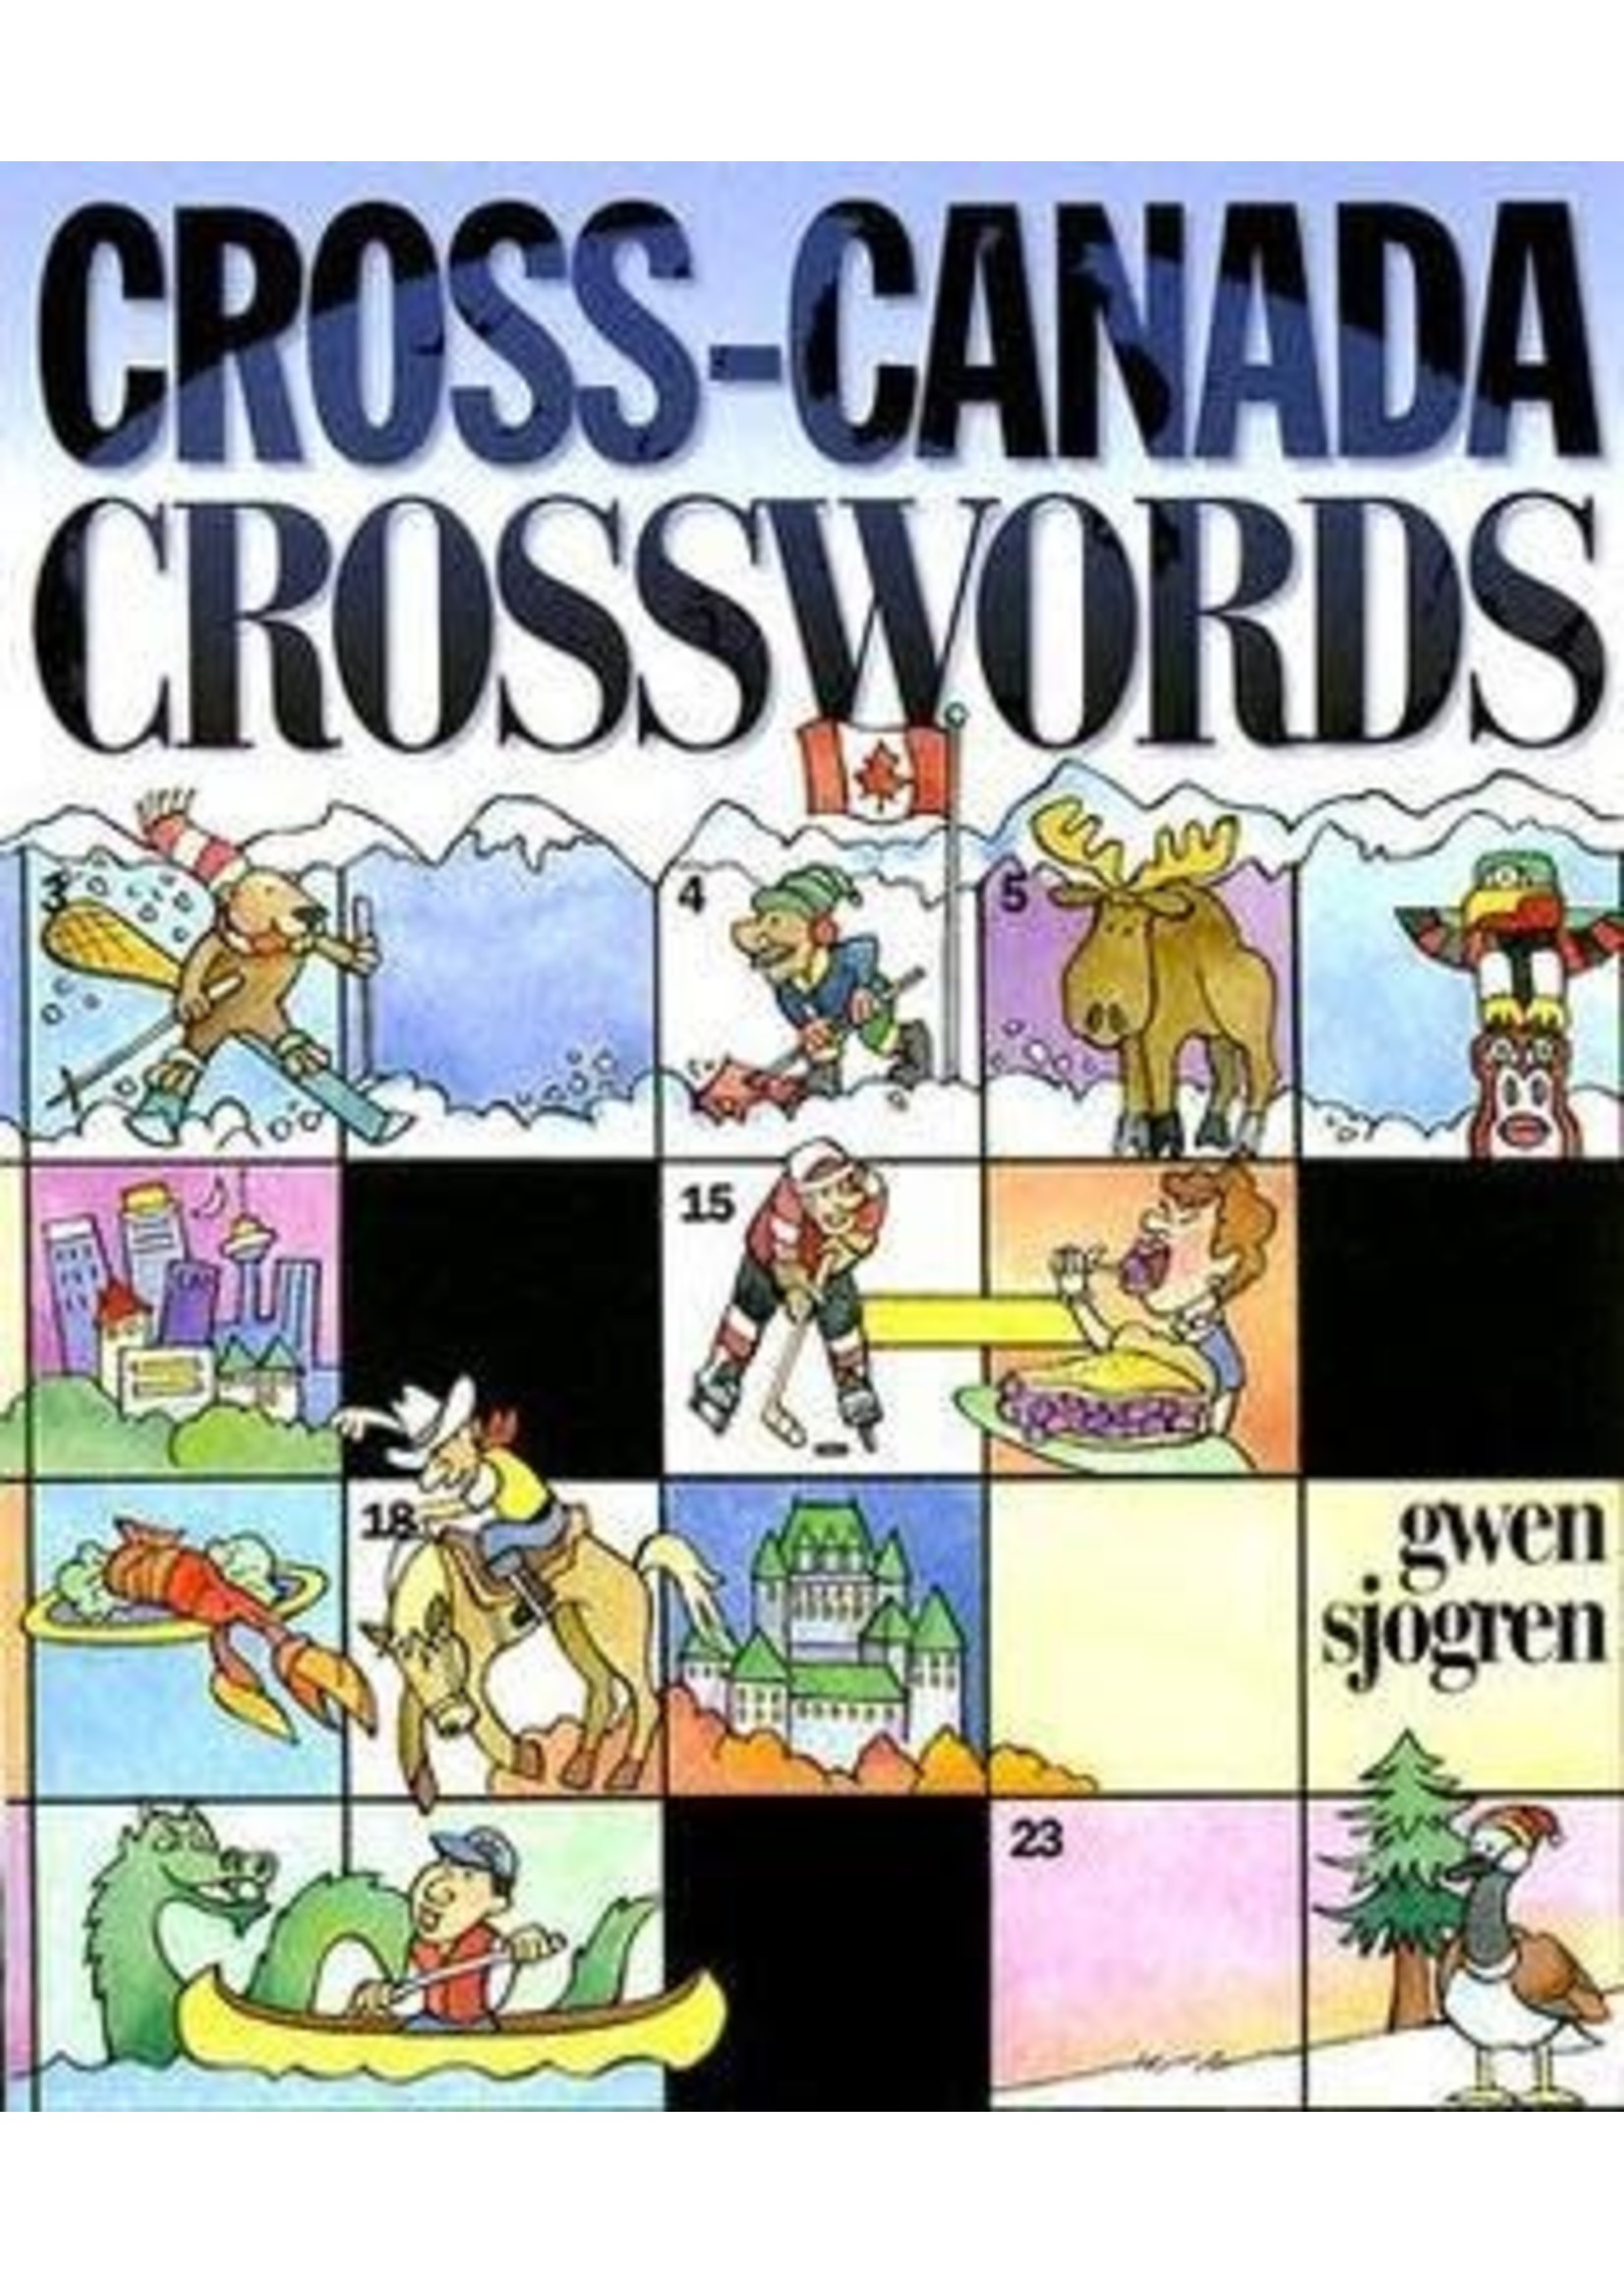 Cross-Canada Crosswords by Gwen Sjogren